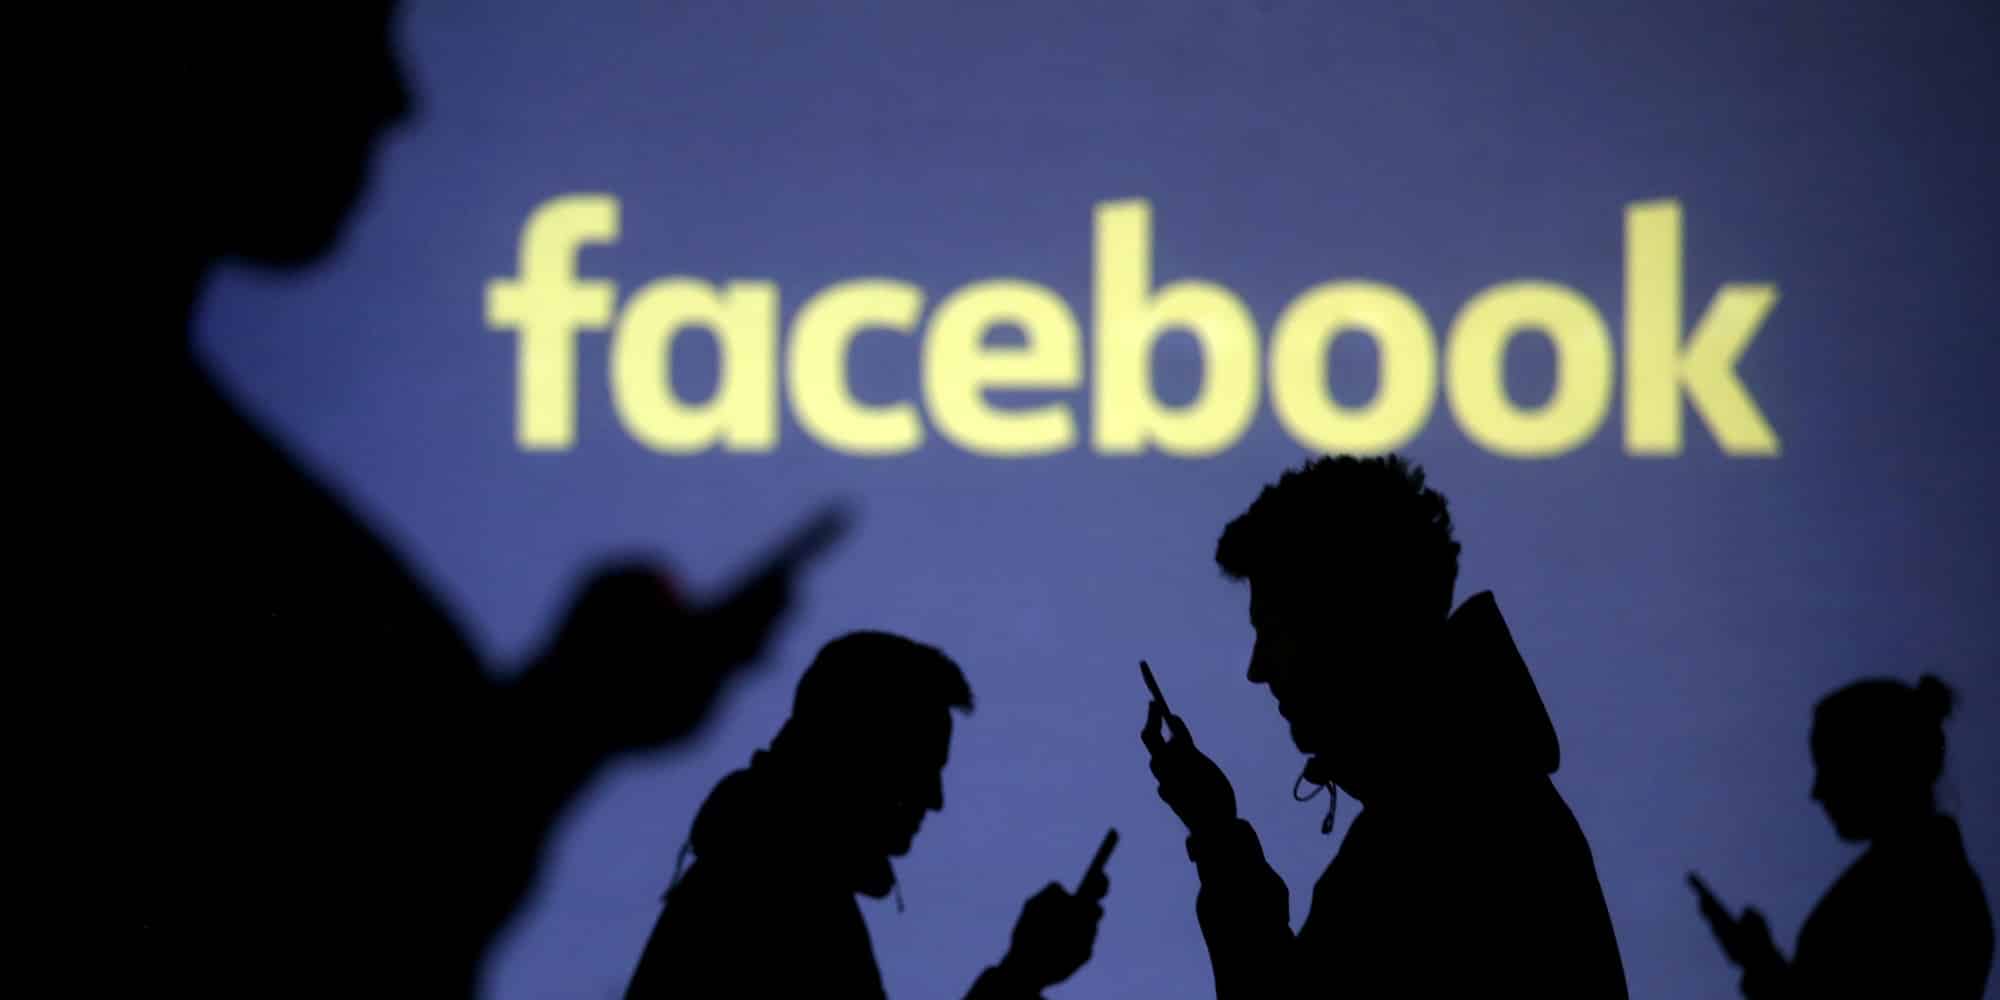 فيسبوك تعلن عن تحقيقها إيرادات بقيمة 16.9 مليار دولار